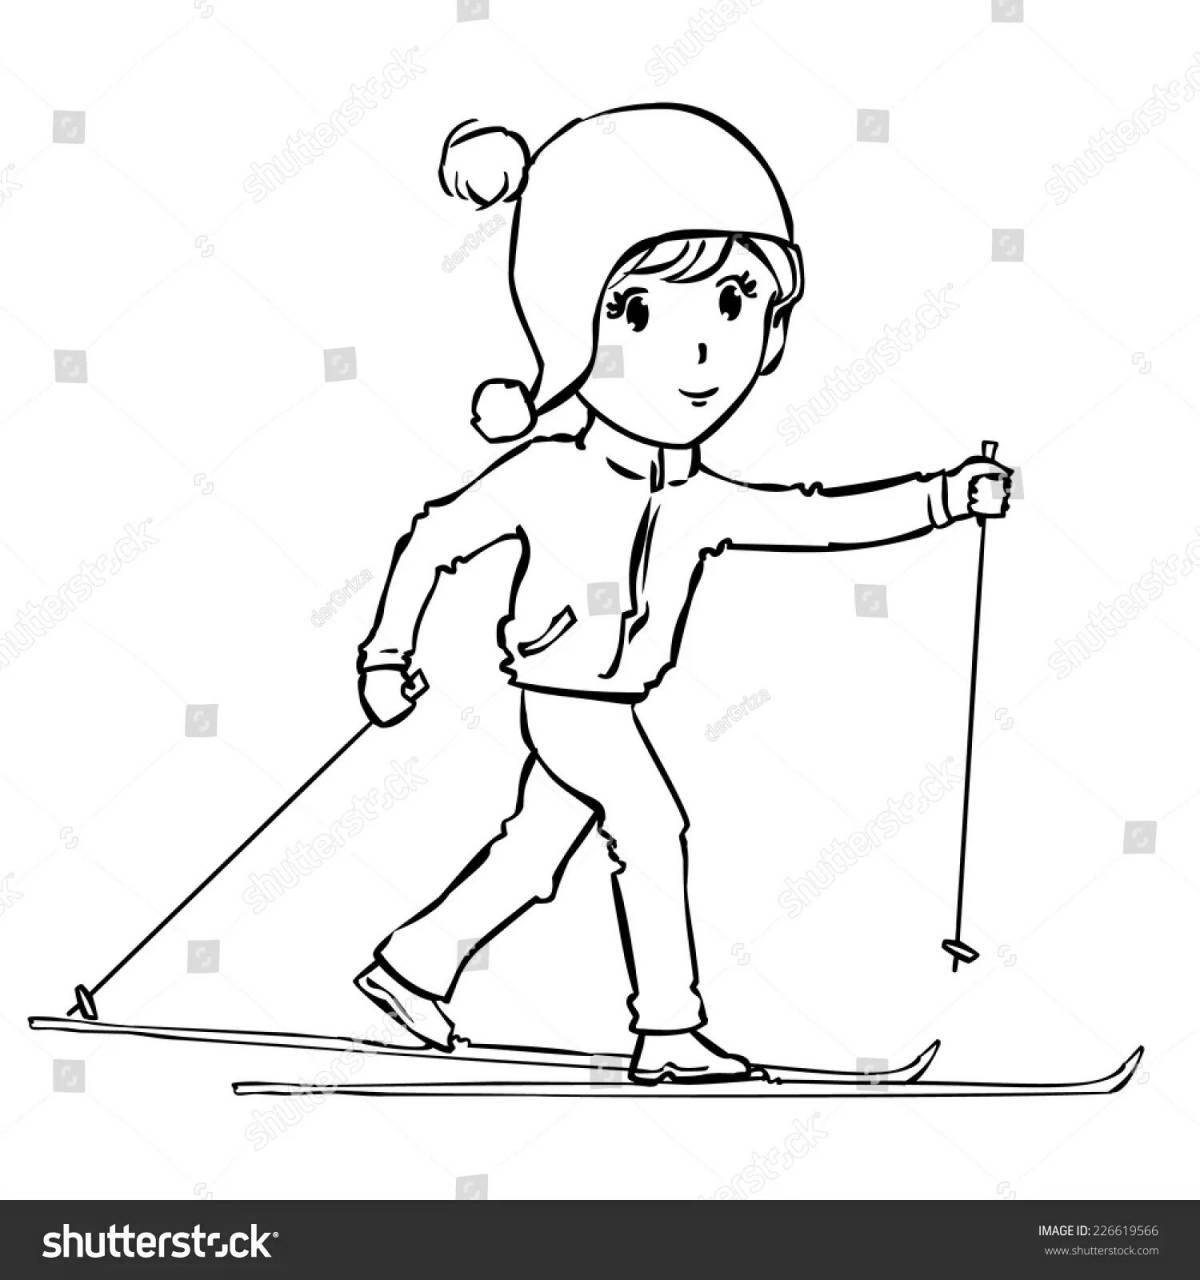 Спортивный лыжник в движении